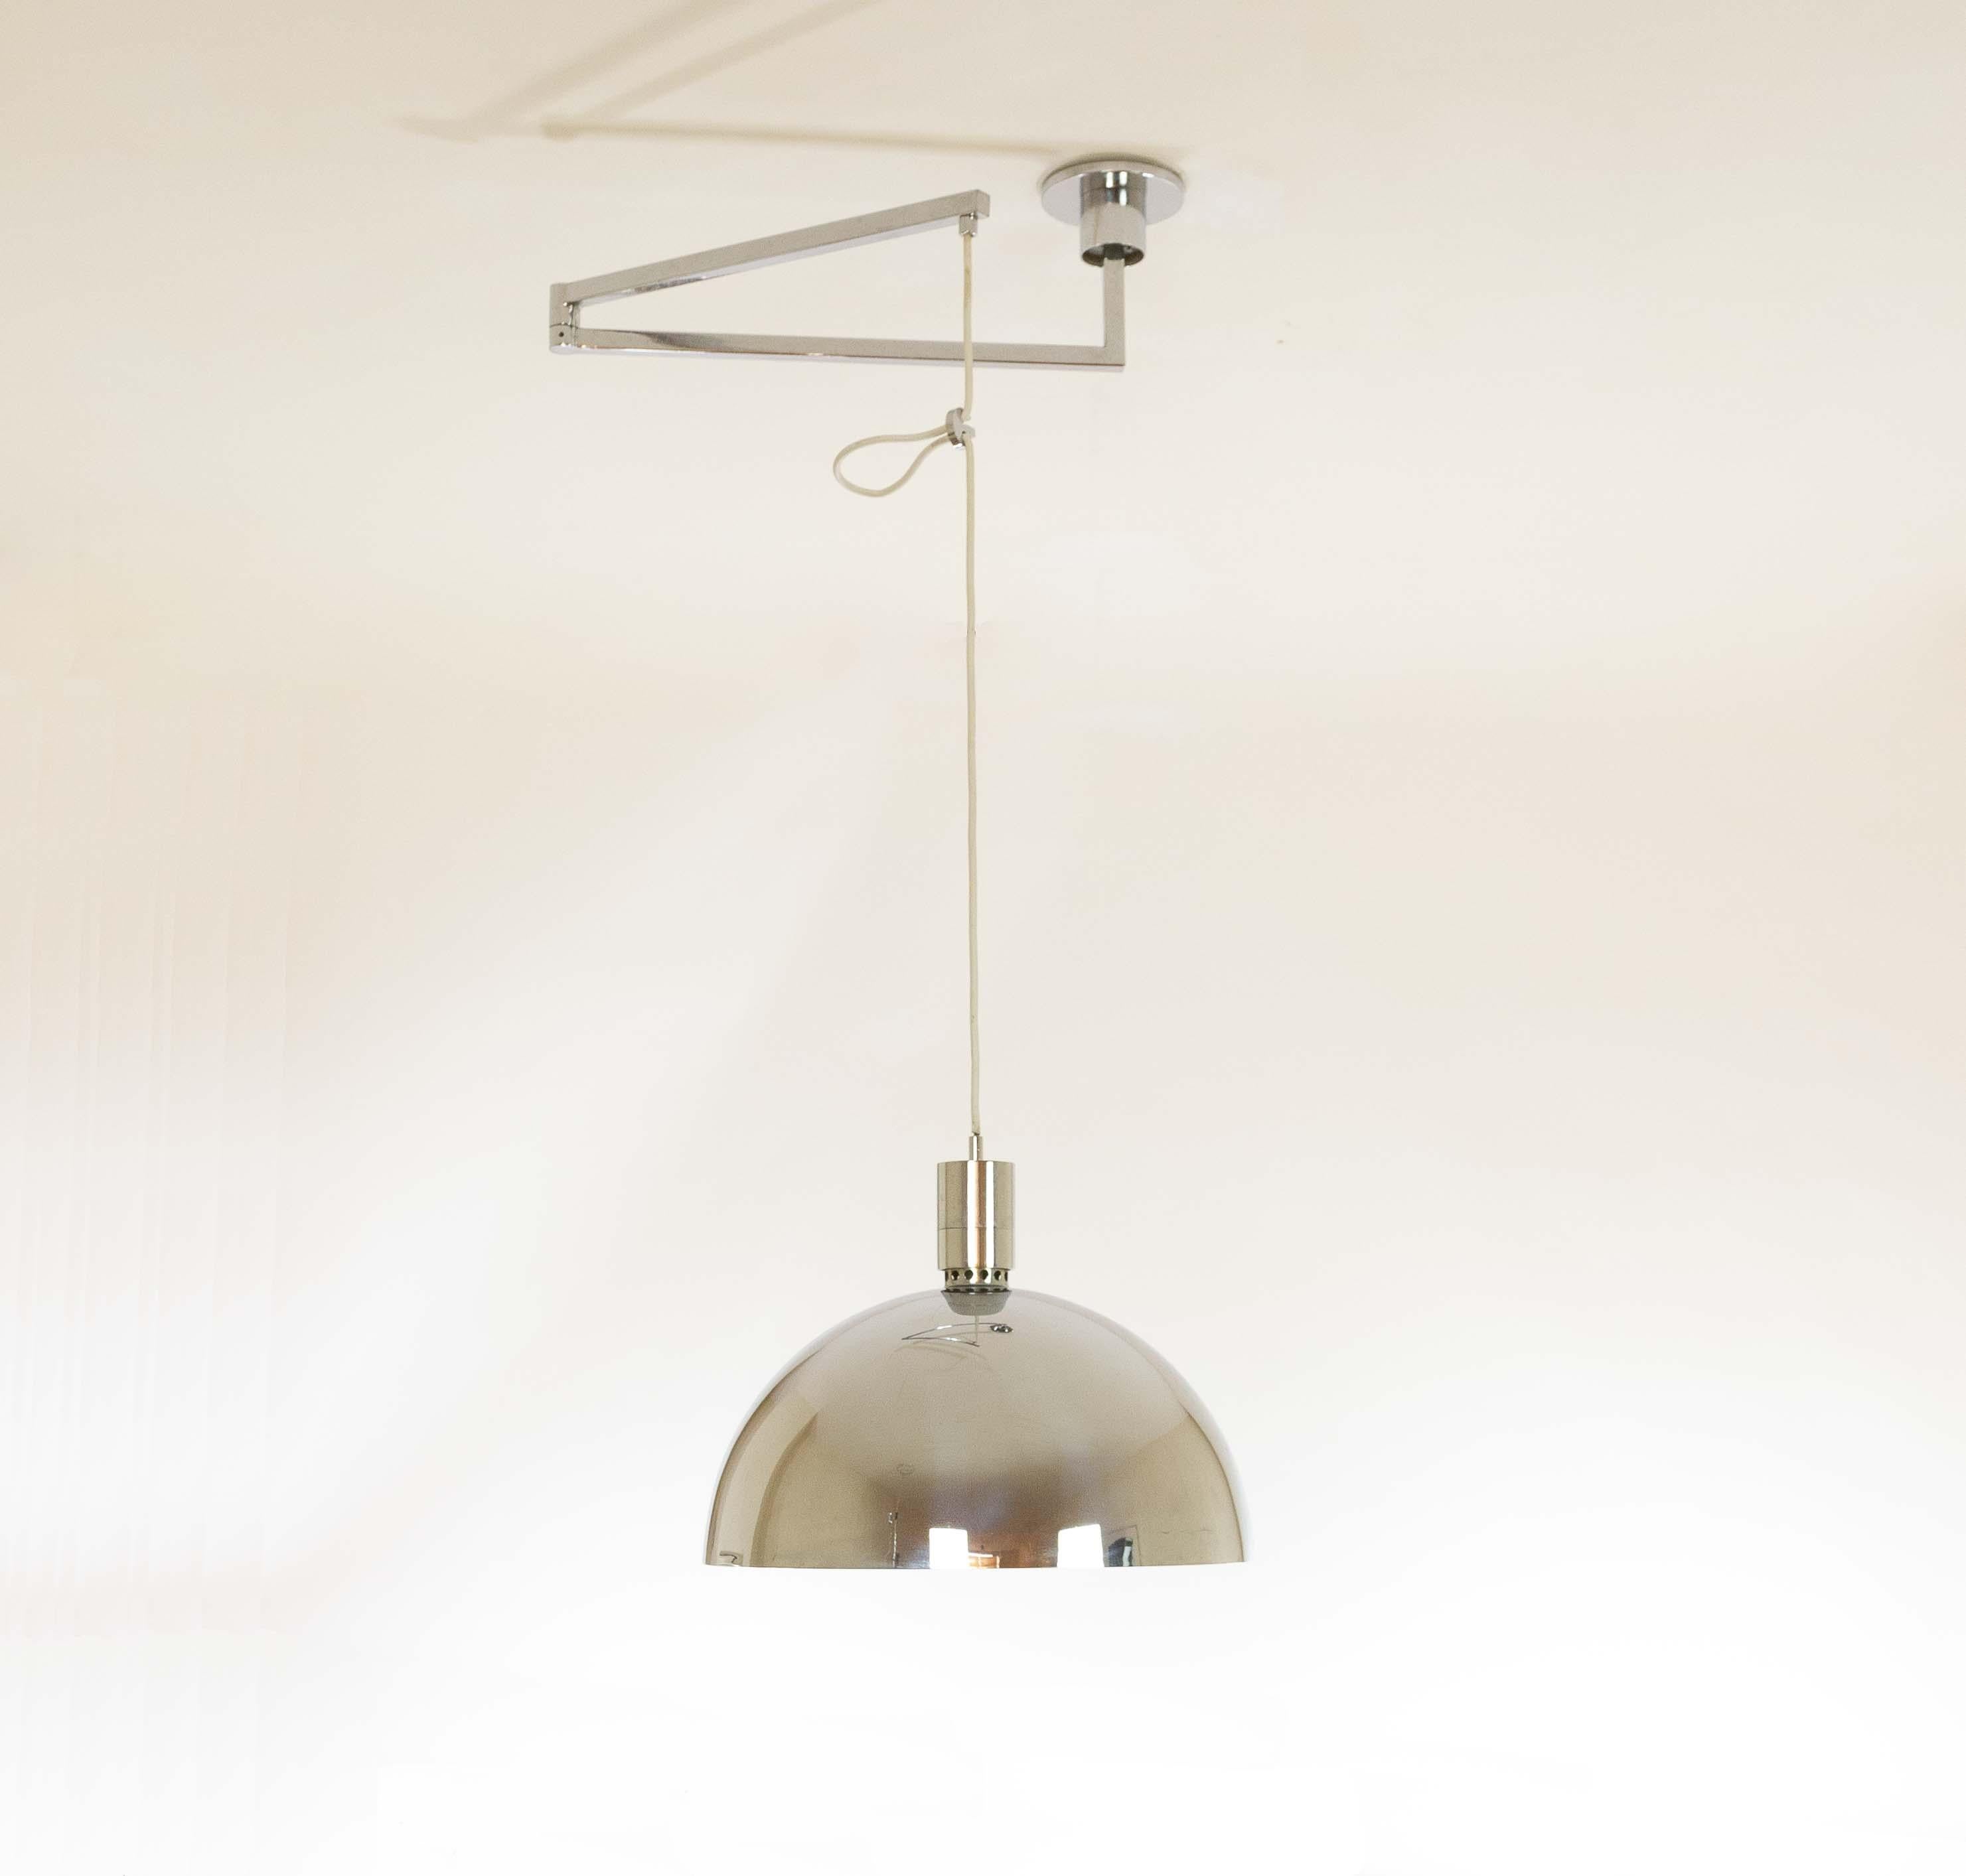 Plafonnier No. conçu par Franco Albini, Franca Helg et Antonio Piva et fabriqué par Sirrah en 1969.

Ce modèle fait partie de la série AM/AS qui comprend des lampes de table, des appliques, des lampadaires et des suspensions. Les lampes sont